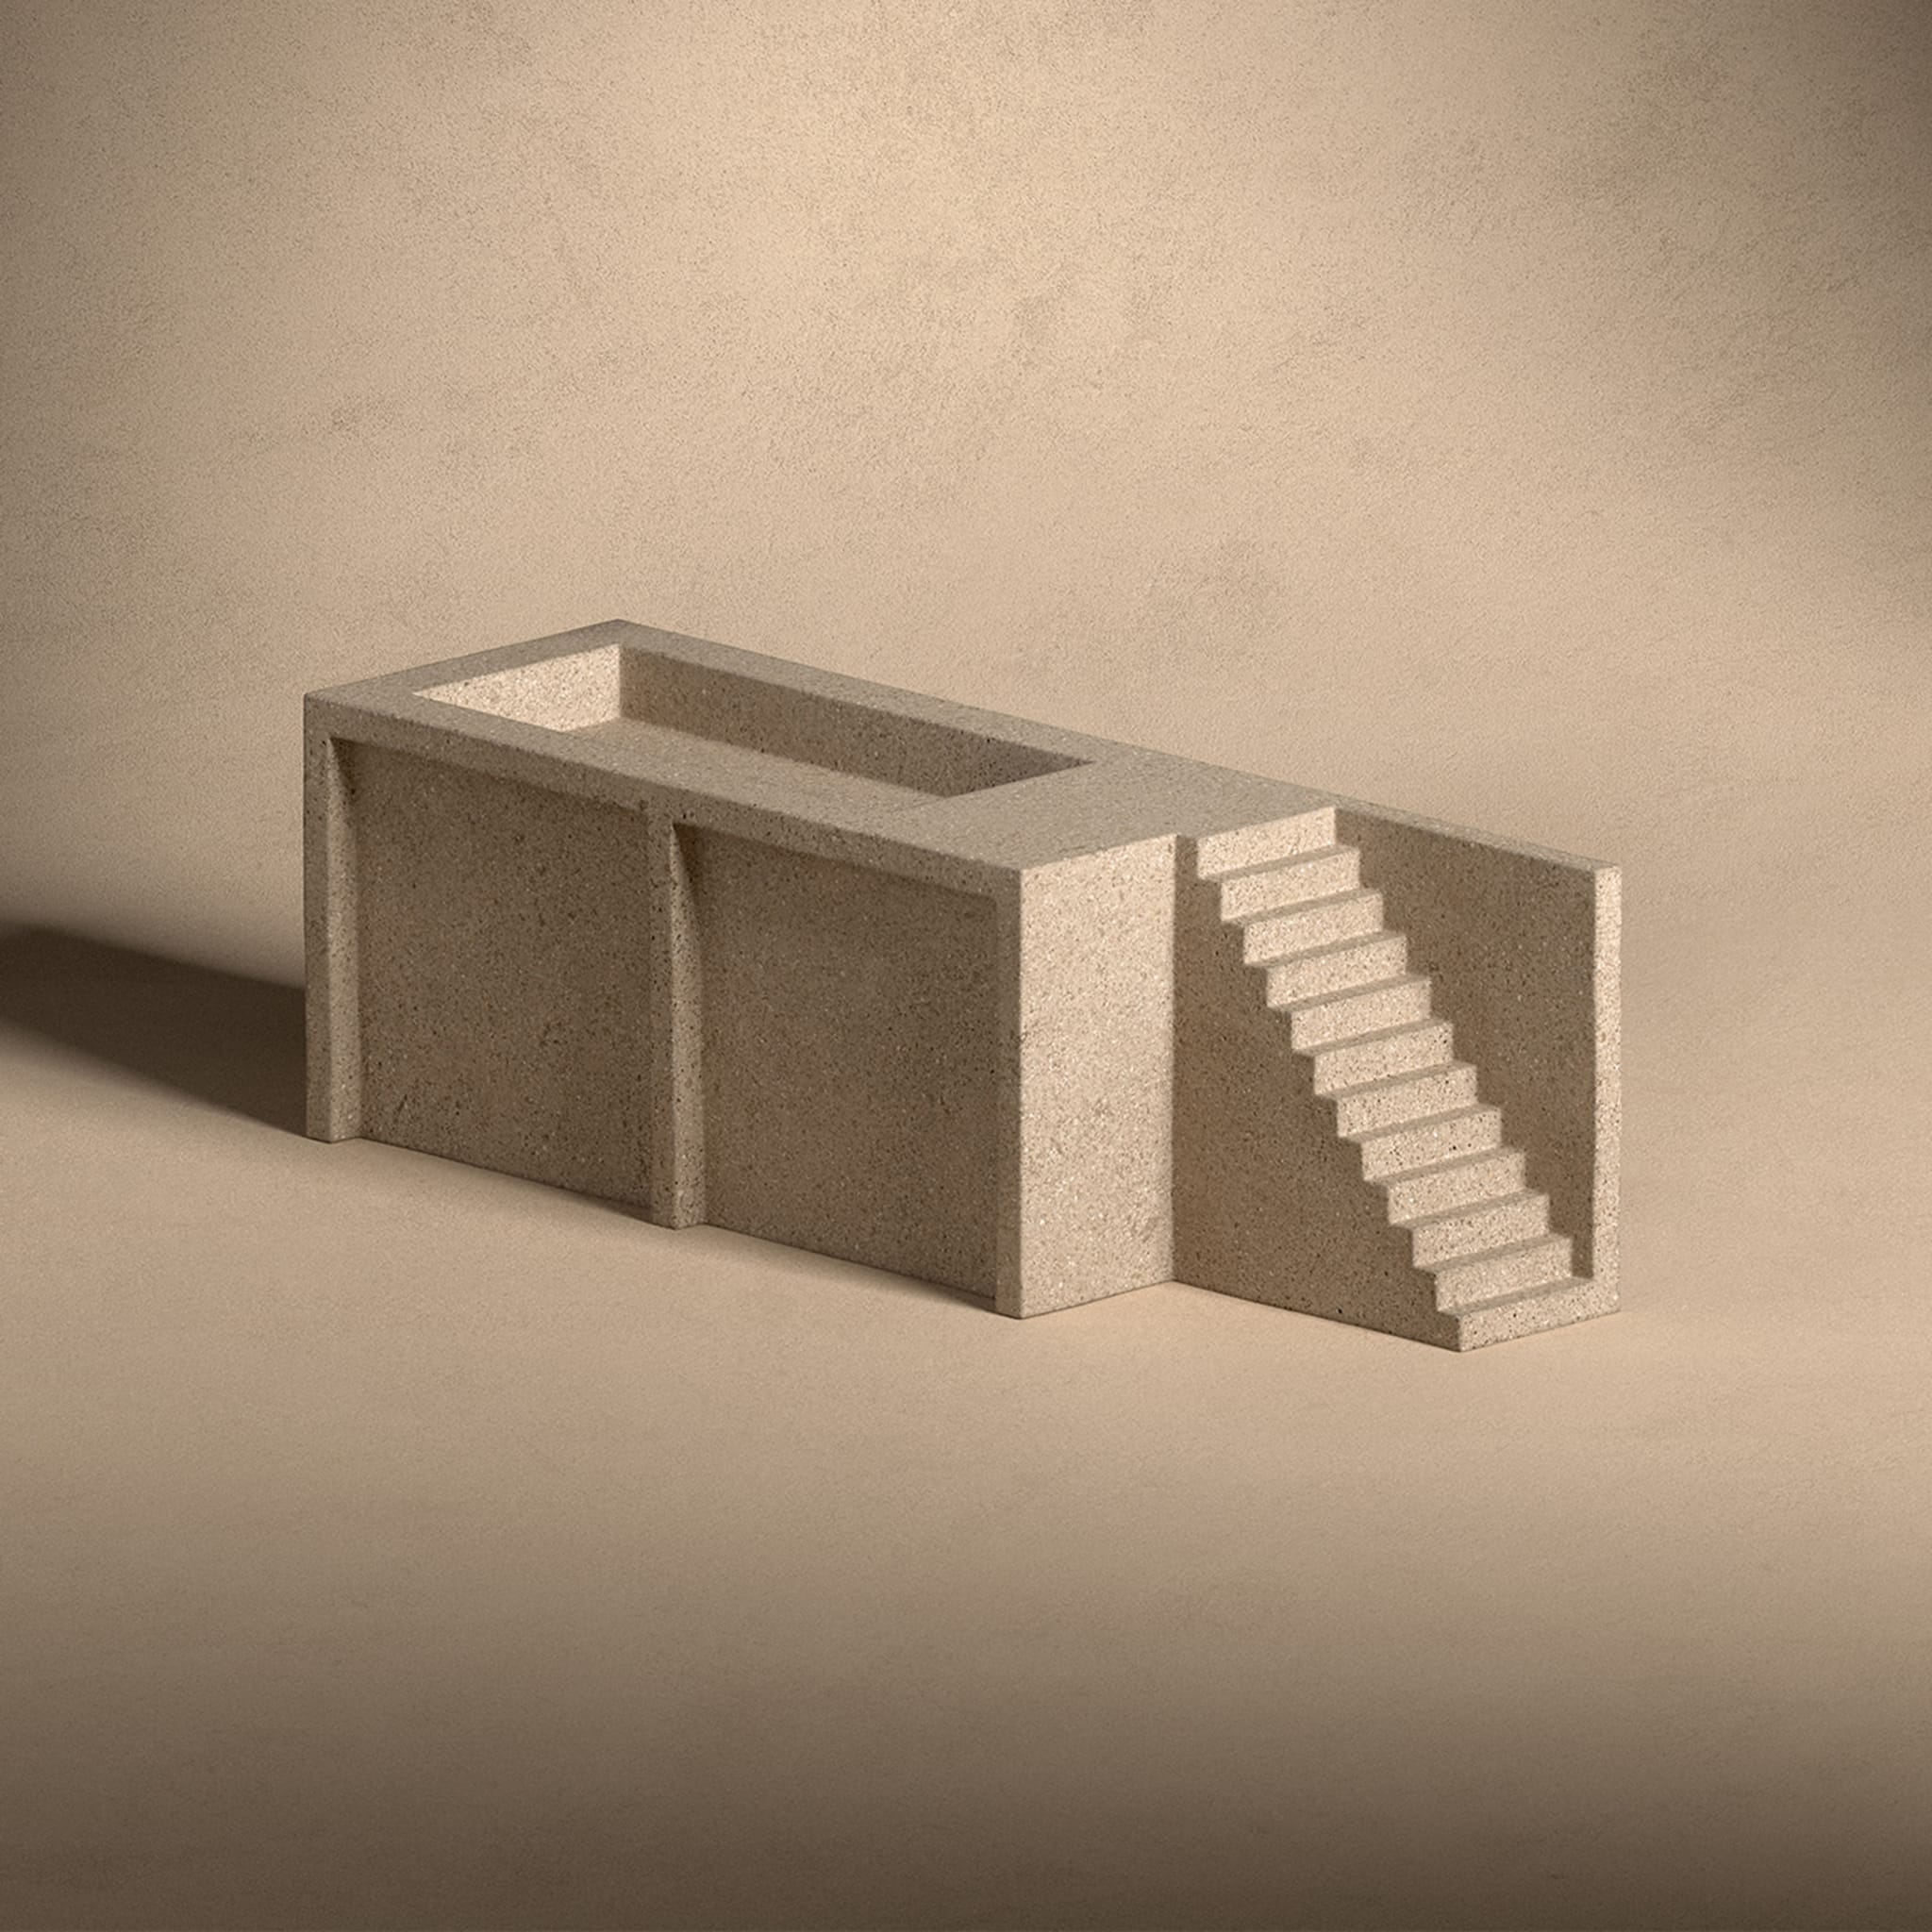 The Village Casa M Module 1 Sculpture by Vincent Van Duysen - Alternative view 3